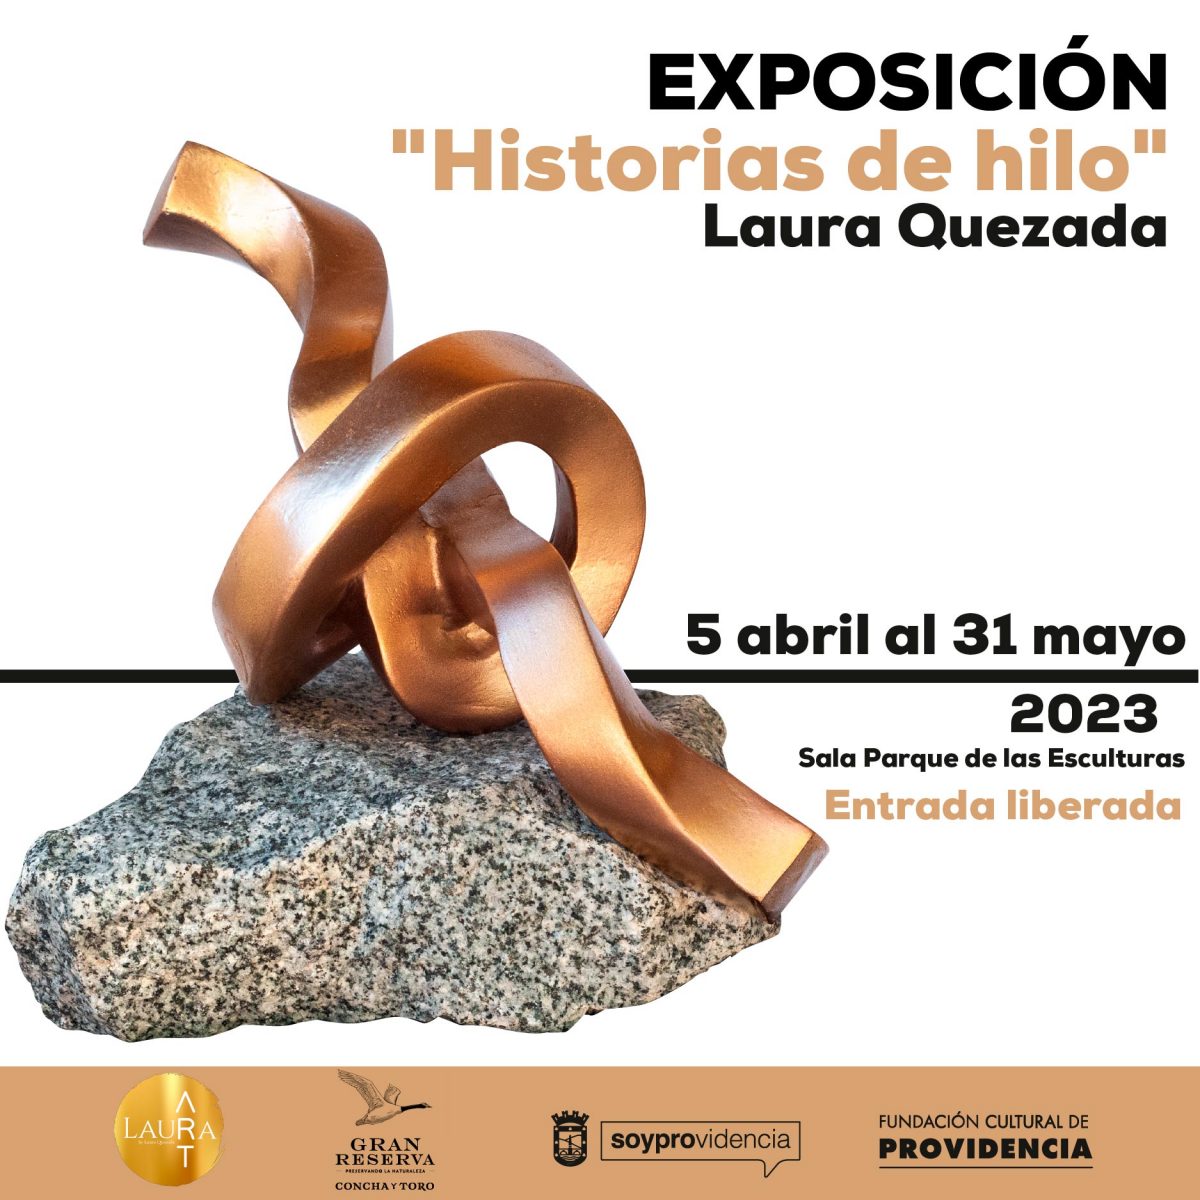 RRSS_Expo-Laura-Quezada_1